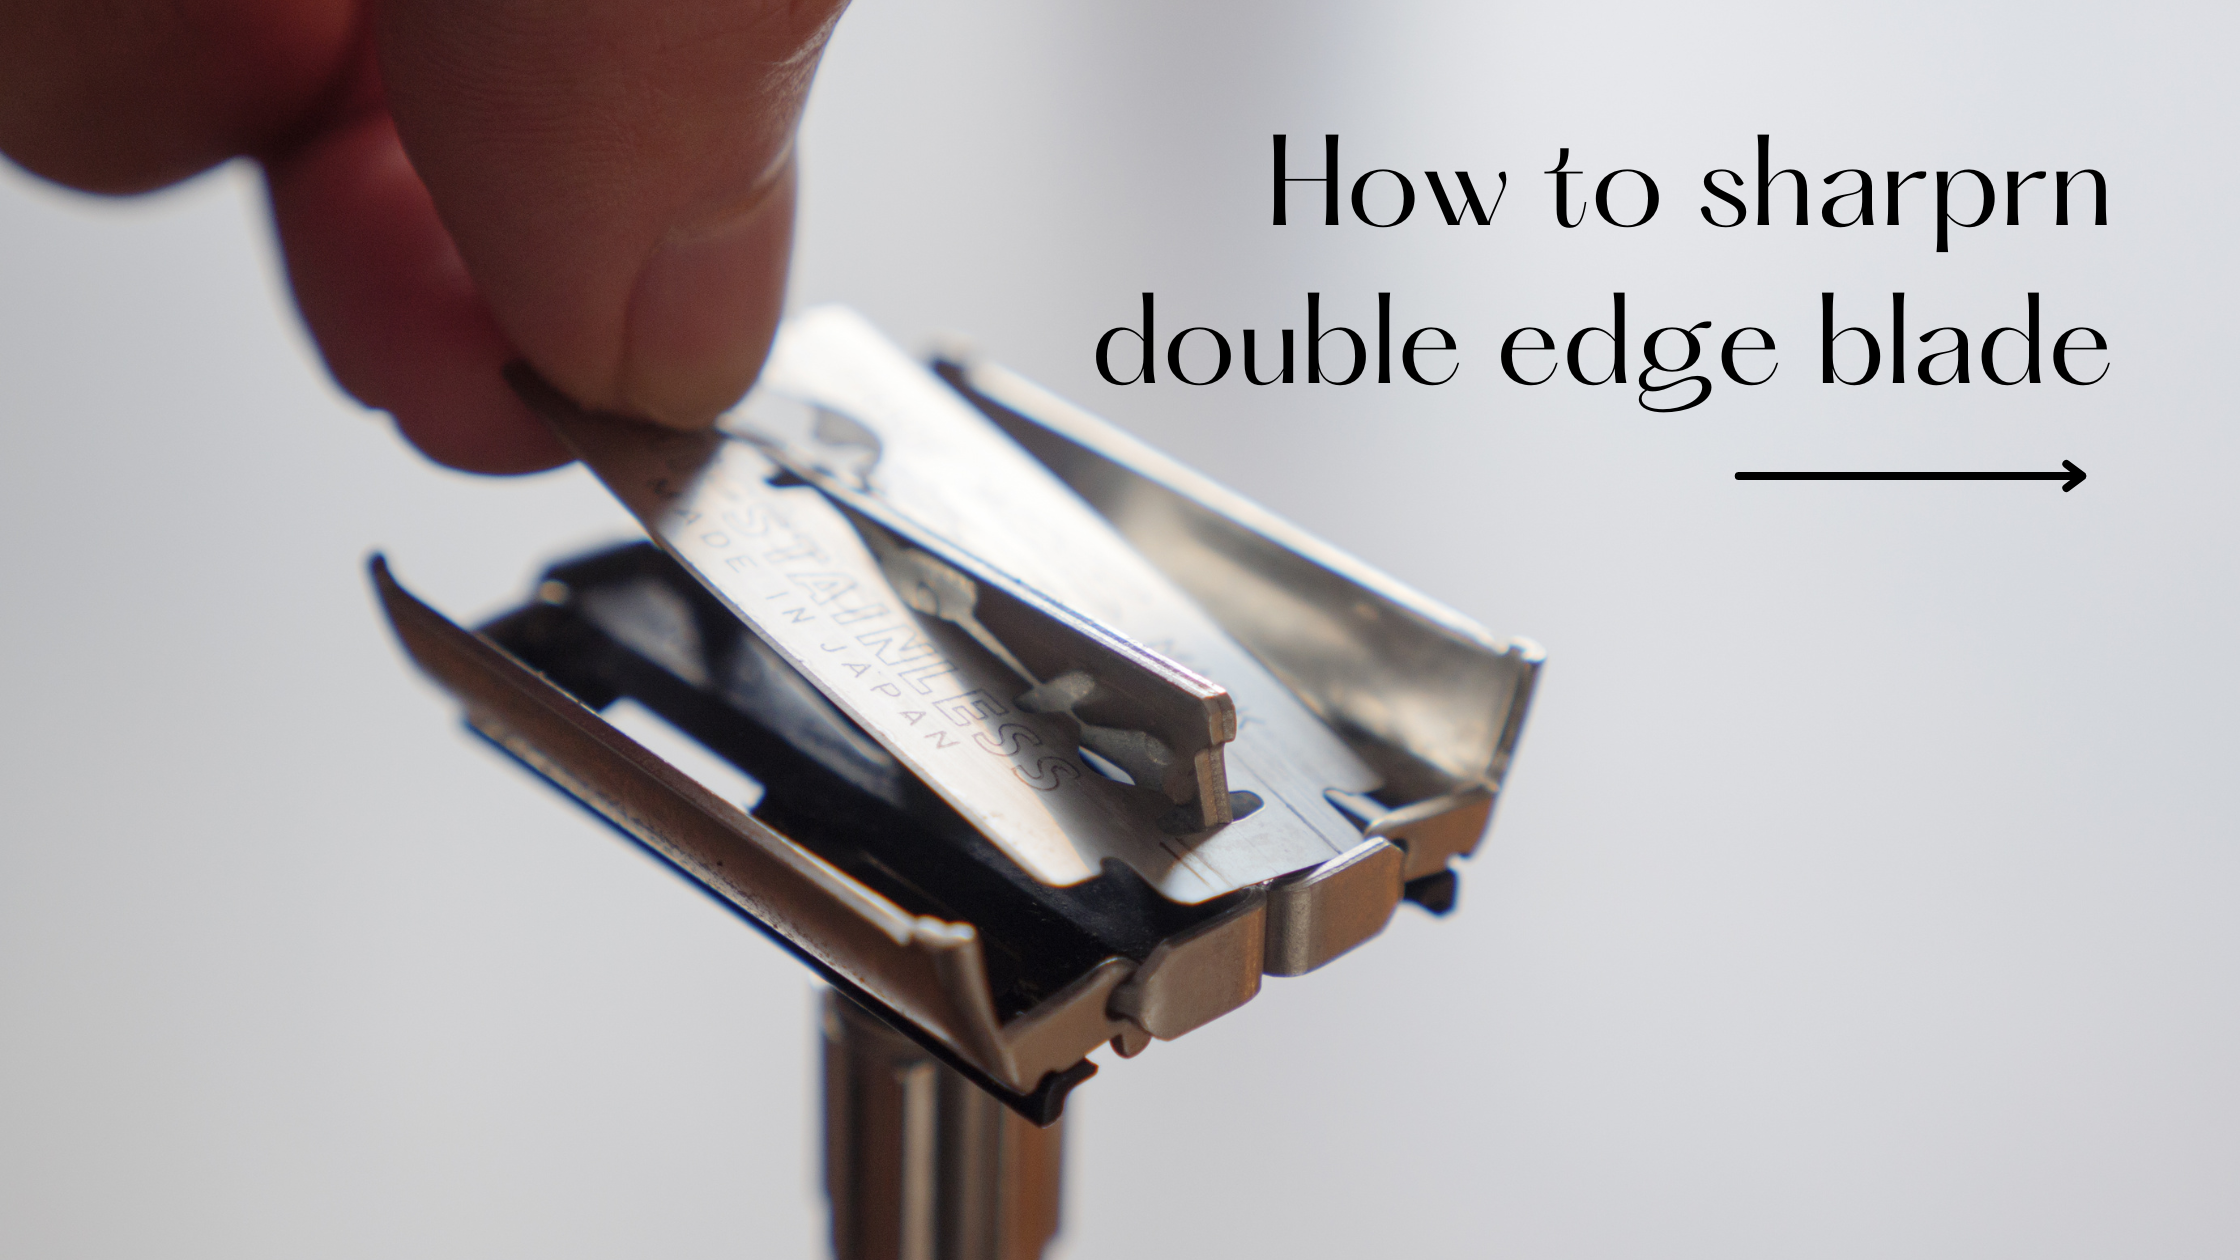 How to Sharpen Double Edge Razor Blade?